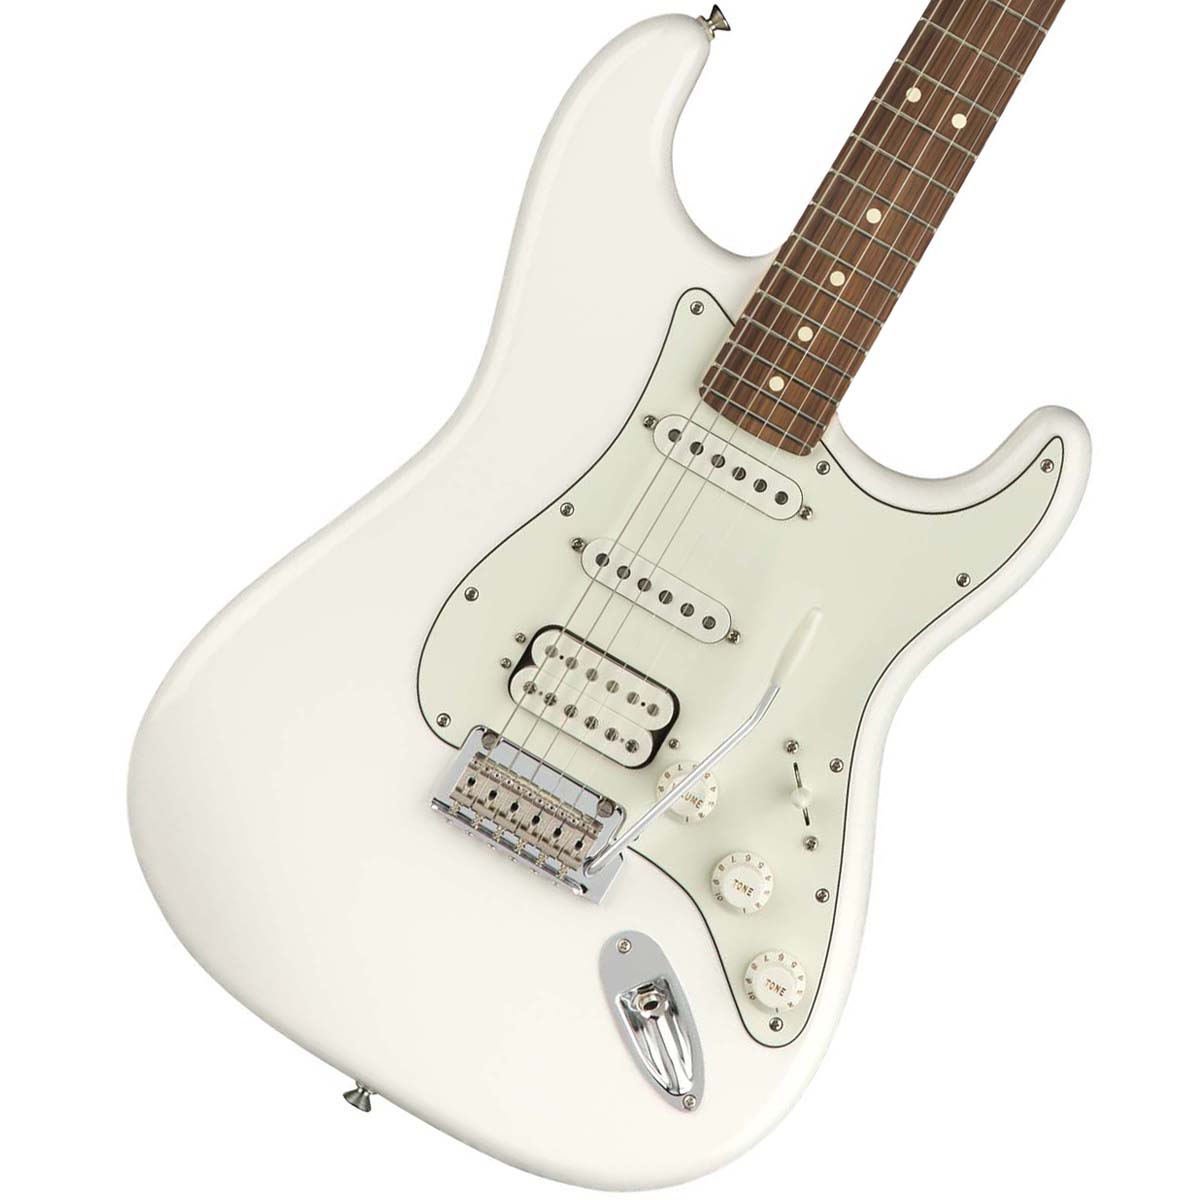 プレーヤー視点から新たなStandardを体現したおすすめモデル Fender Player Series 誕生日プレゼント Stratocaster HSS 新品特価 Pau Ferro 贈呈 White Polar YRK